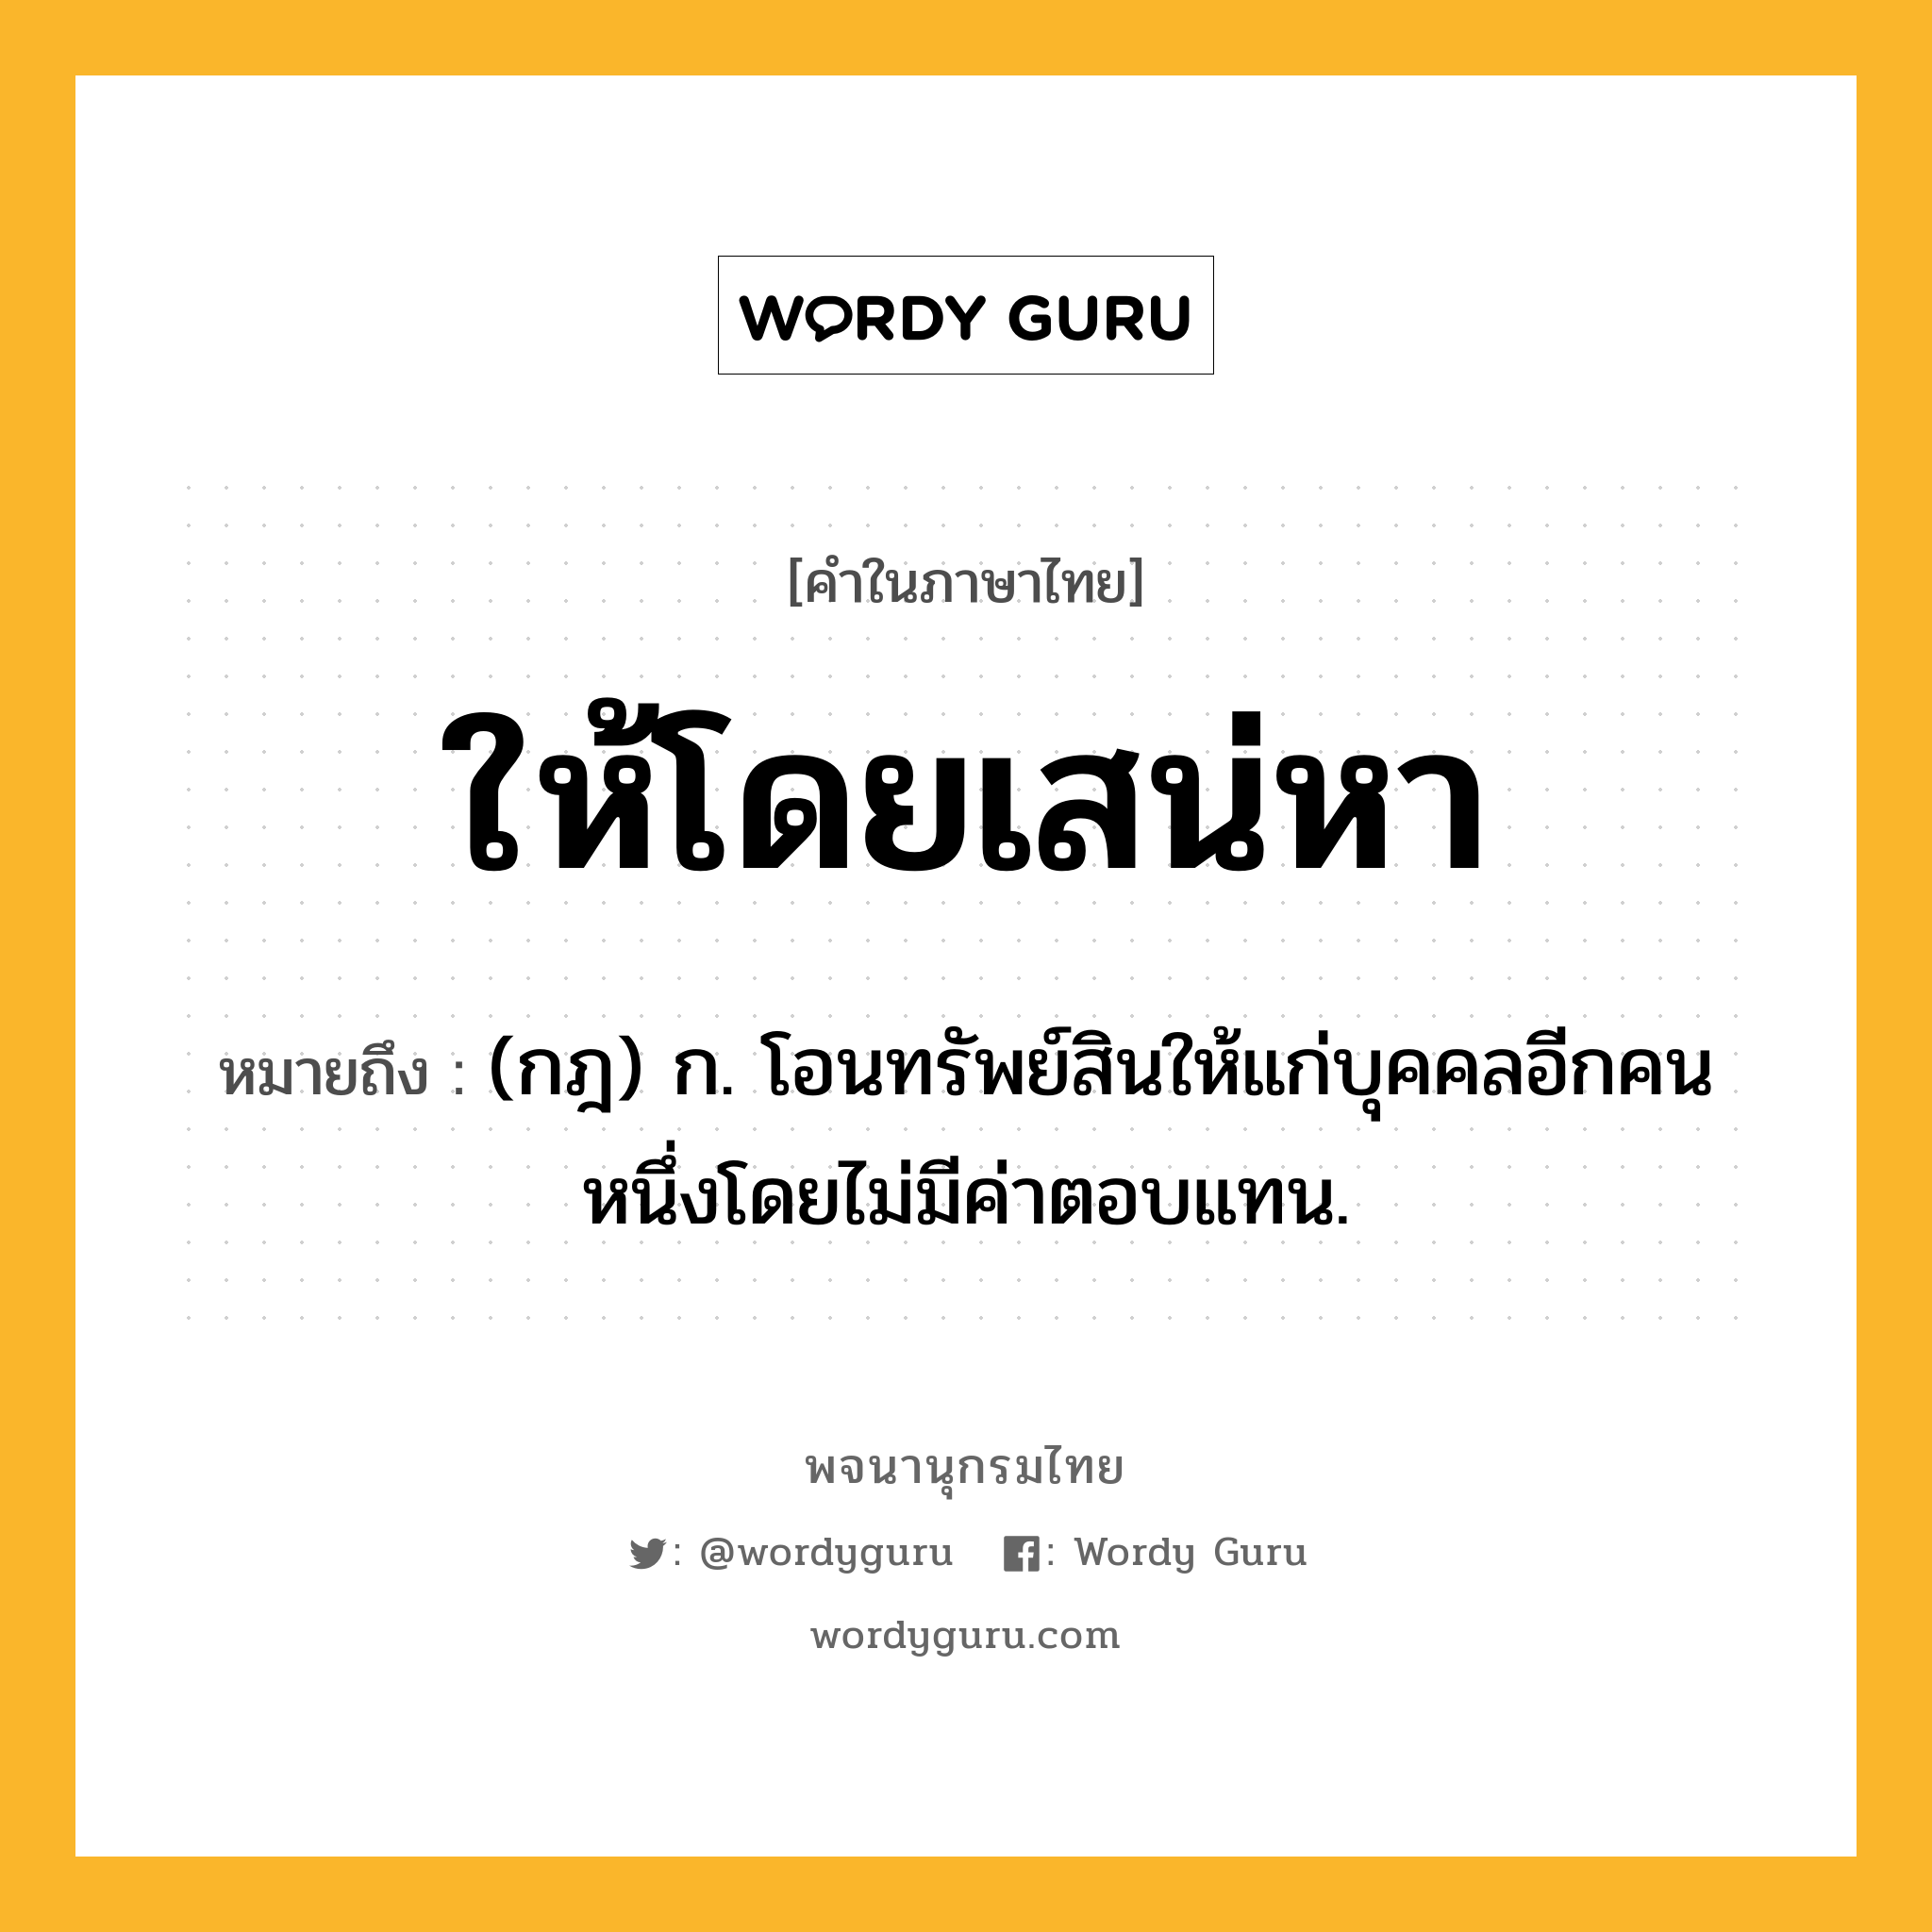 ให้โดยเสน่หา หมายถึงอะไร?, คำในภาษาไทย ให้โดยเสน่หา หมายถึง (กฎ) ก. โอนทรัพย์สินให้แก่บุคคลอีกคนหนึ่งโดยไม่มีค่าตอบแทน.